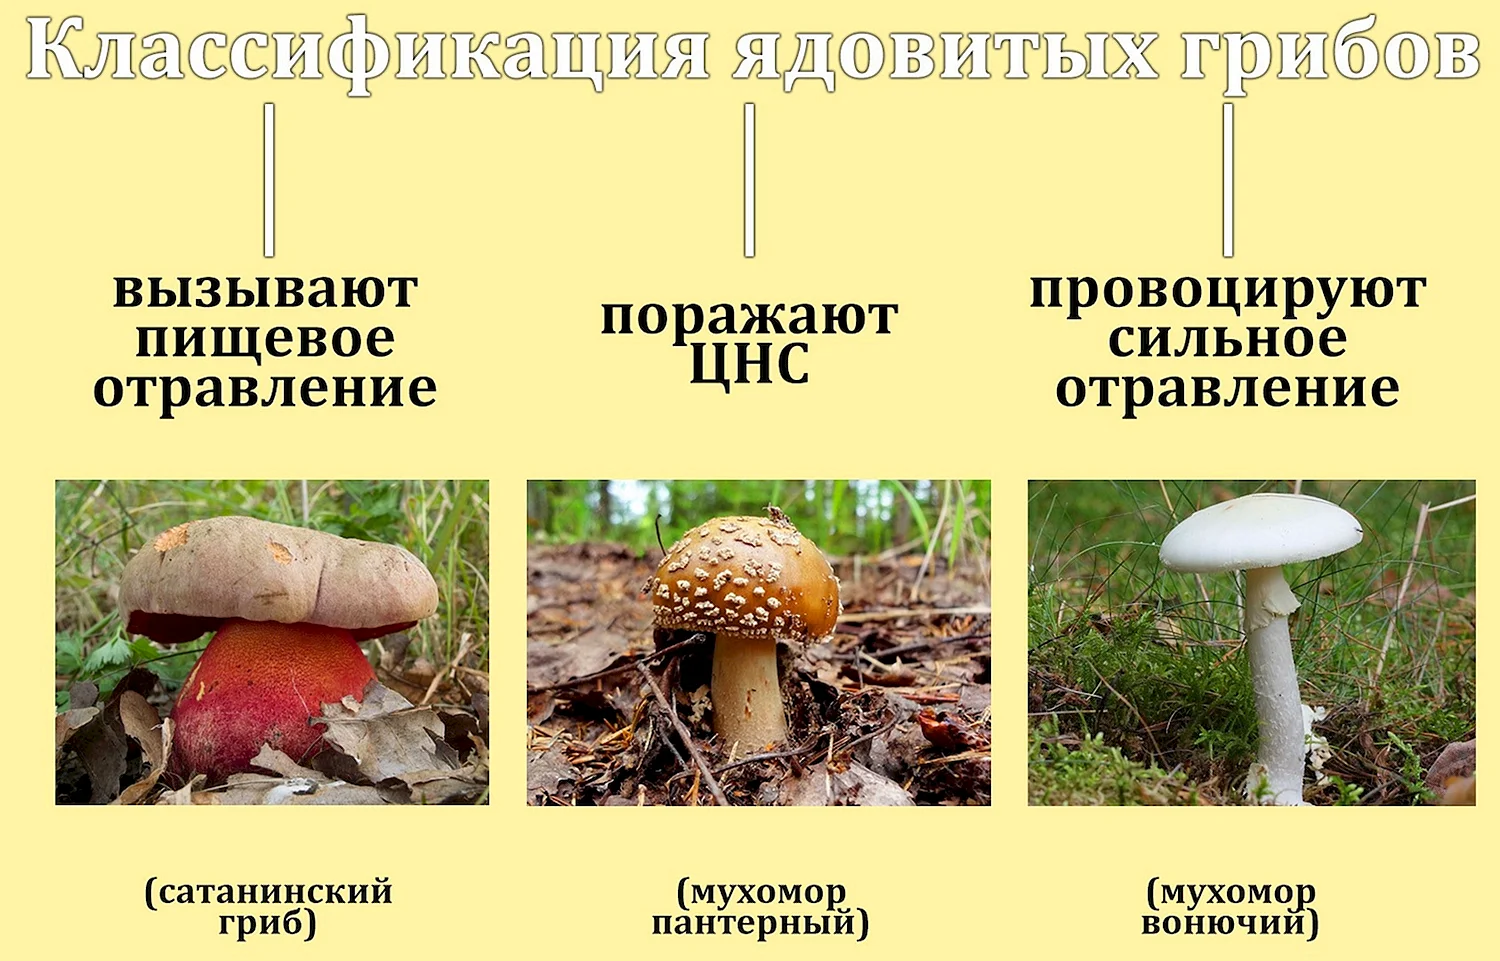 Съедобные условно съедобные и несъедобные грибы